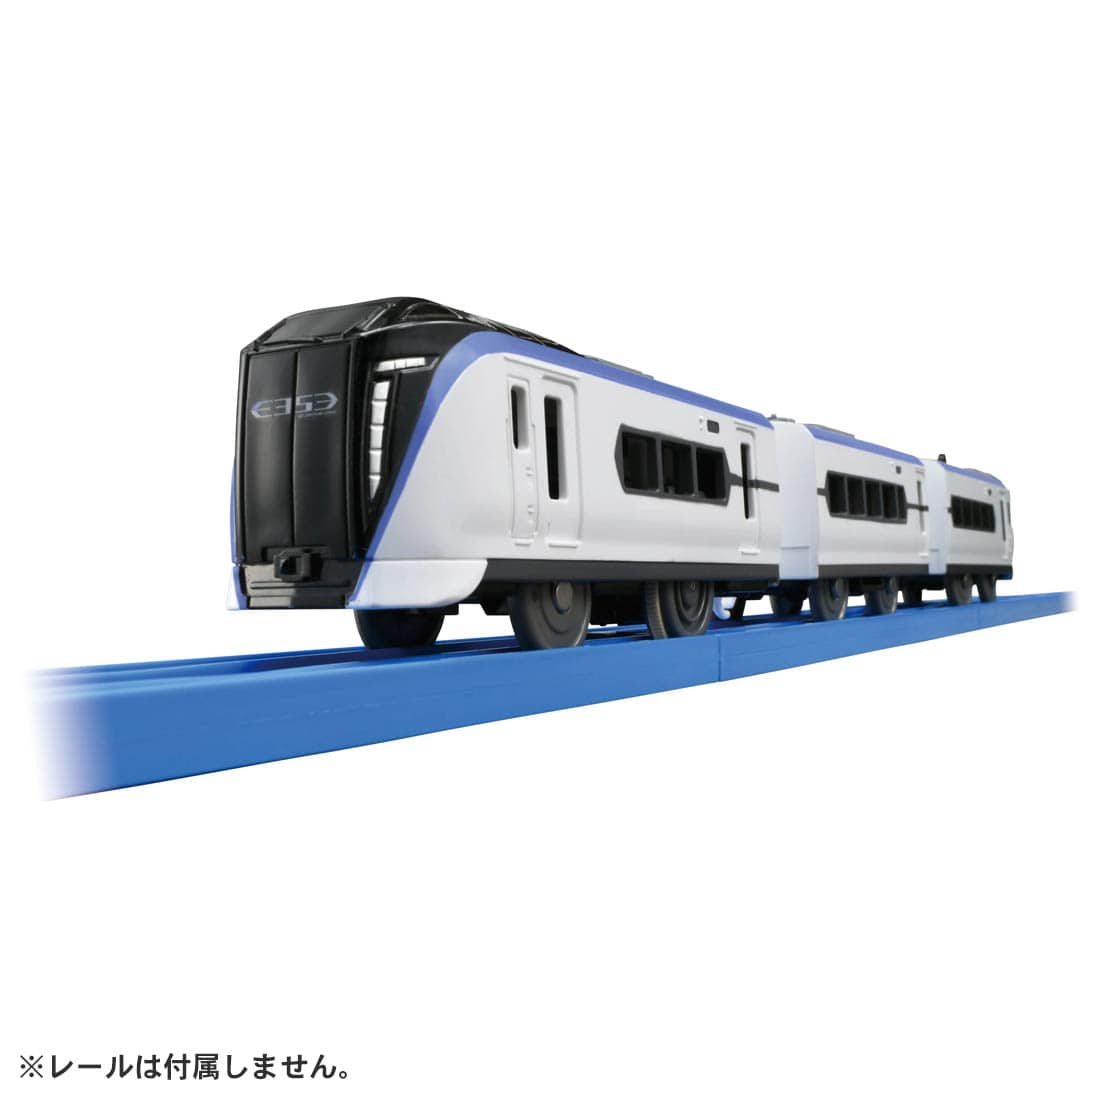 ■JR東日本「E353系あずさ」がモデル ■後尾車に専用連結ギミック搭載　2セットあれば「E353系あずさ」同士の連結が可能 ■3両編成でそれぞれ連結・切り離し可能 ■のせかえシャーシ対応 ■1スピード・スイッチOFFで手転がし遊び可能 ■プラ列車カード付 ※レールは付属しません。 ※連結は「E353系あずさ」同士で行ってください。 ※この商品には「E353系あずさ」3両編成1セットが入っています。 ※マグネットを使用した「連結仕様」の車両とは連結できません。